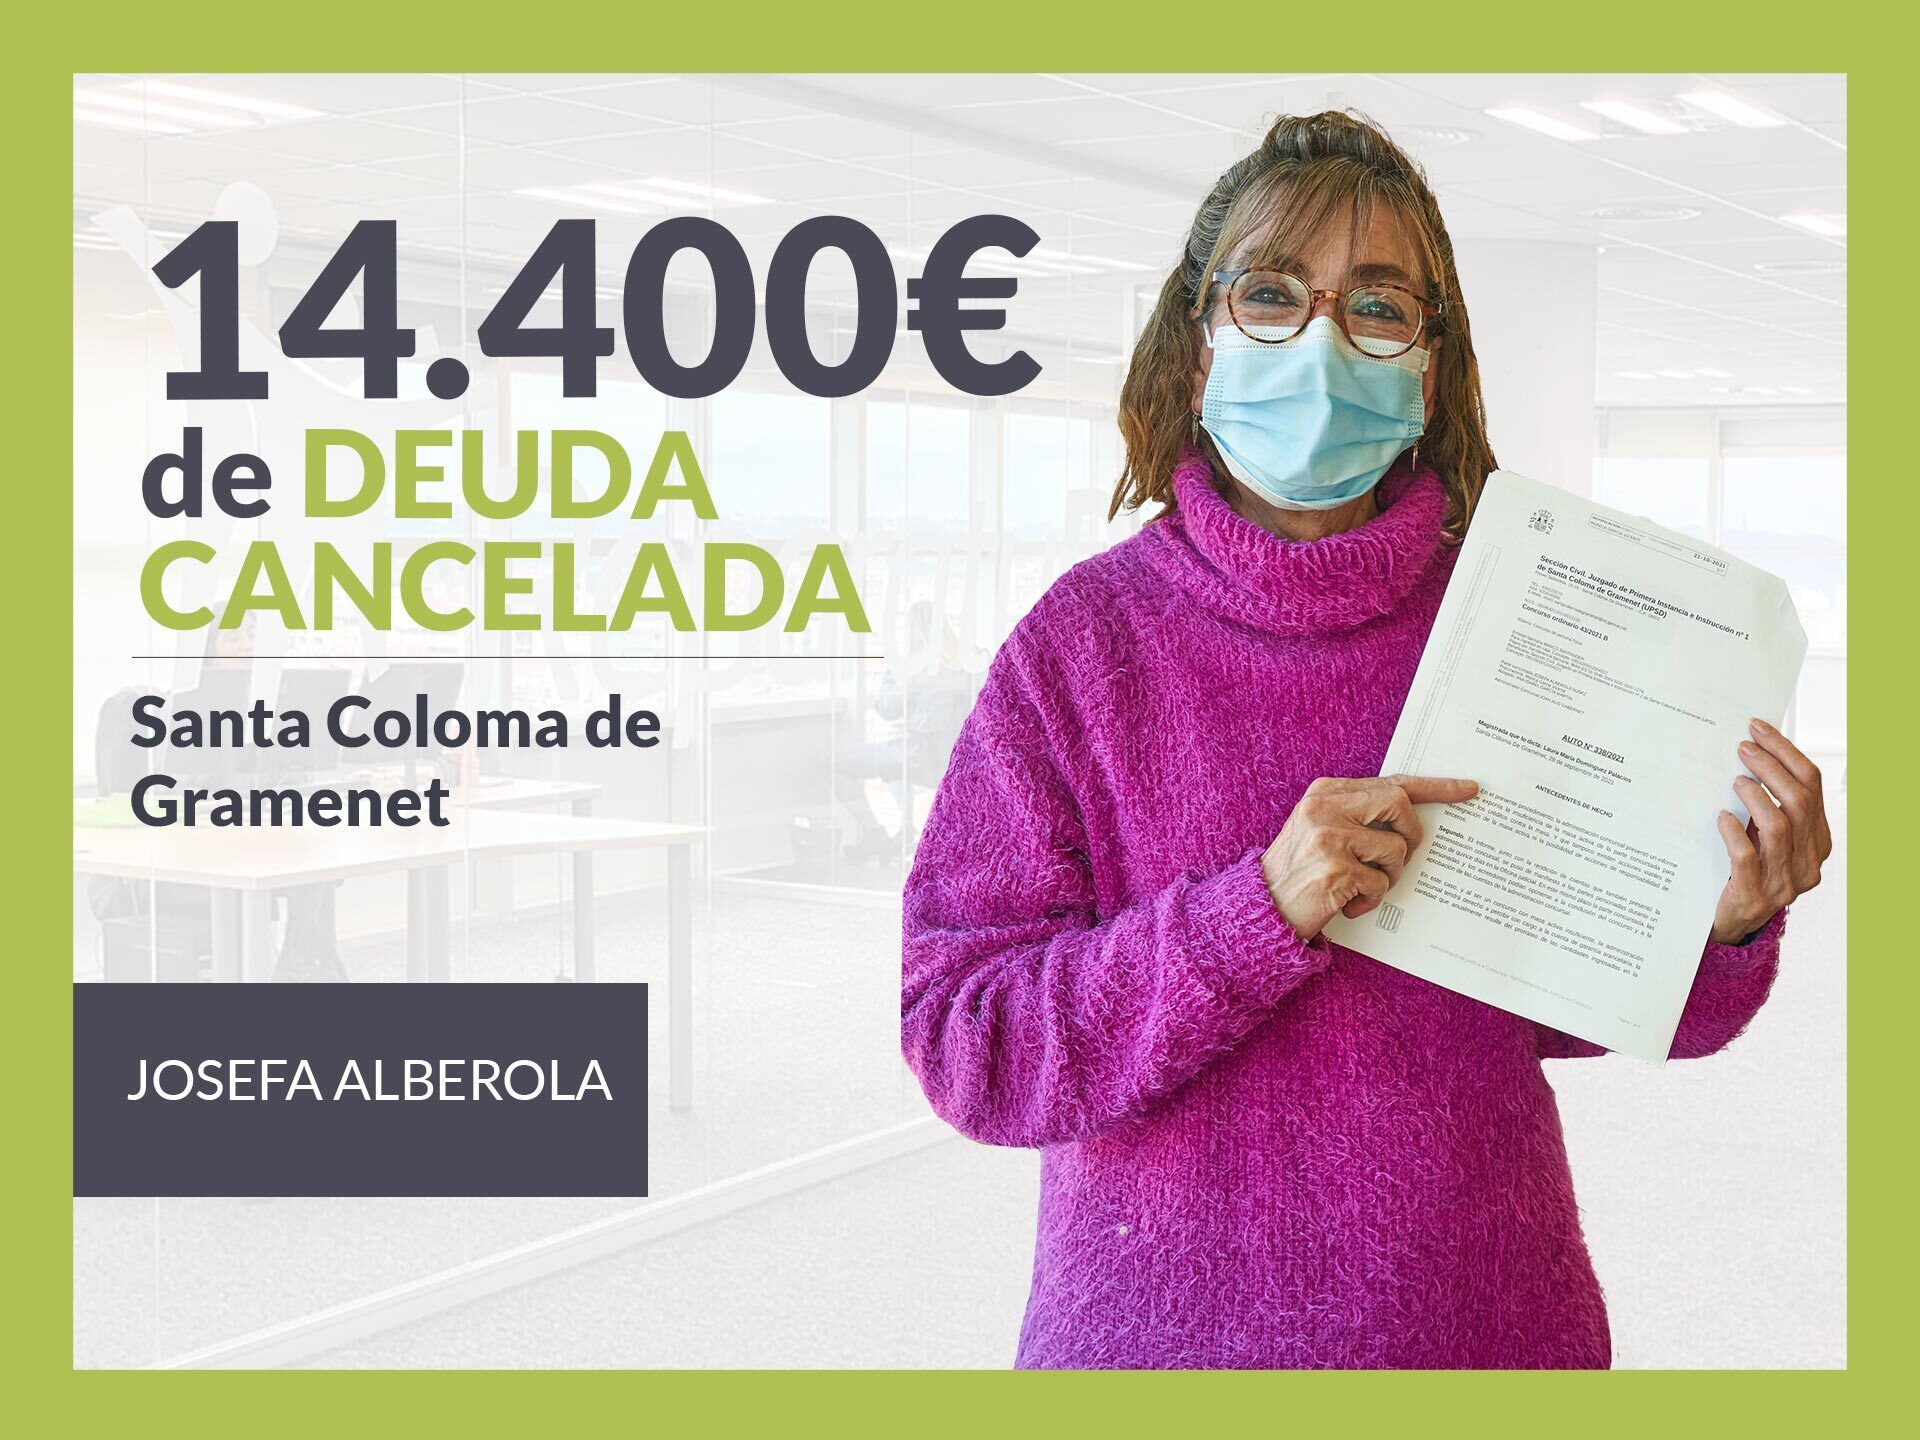 Repara tu Deuda cancela 14.400? en Santa Coloma de Gramenet (Barcelona) con la Ley de Segunda Oportunidad